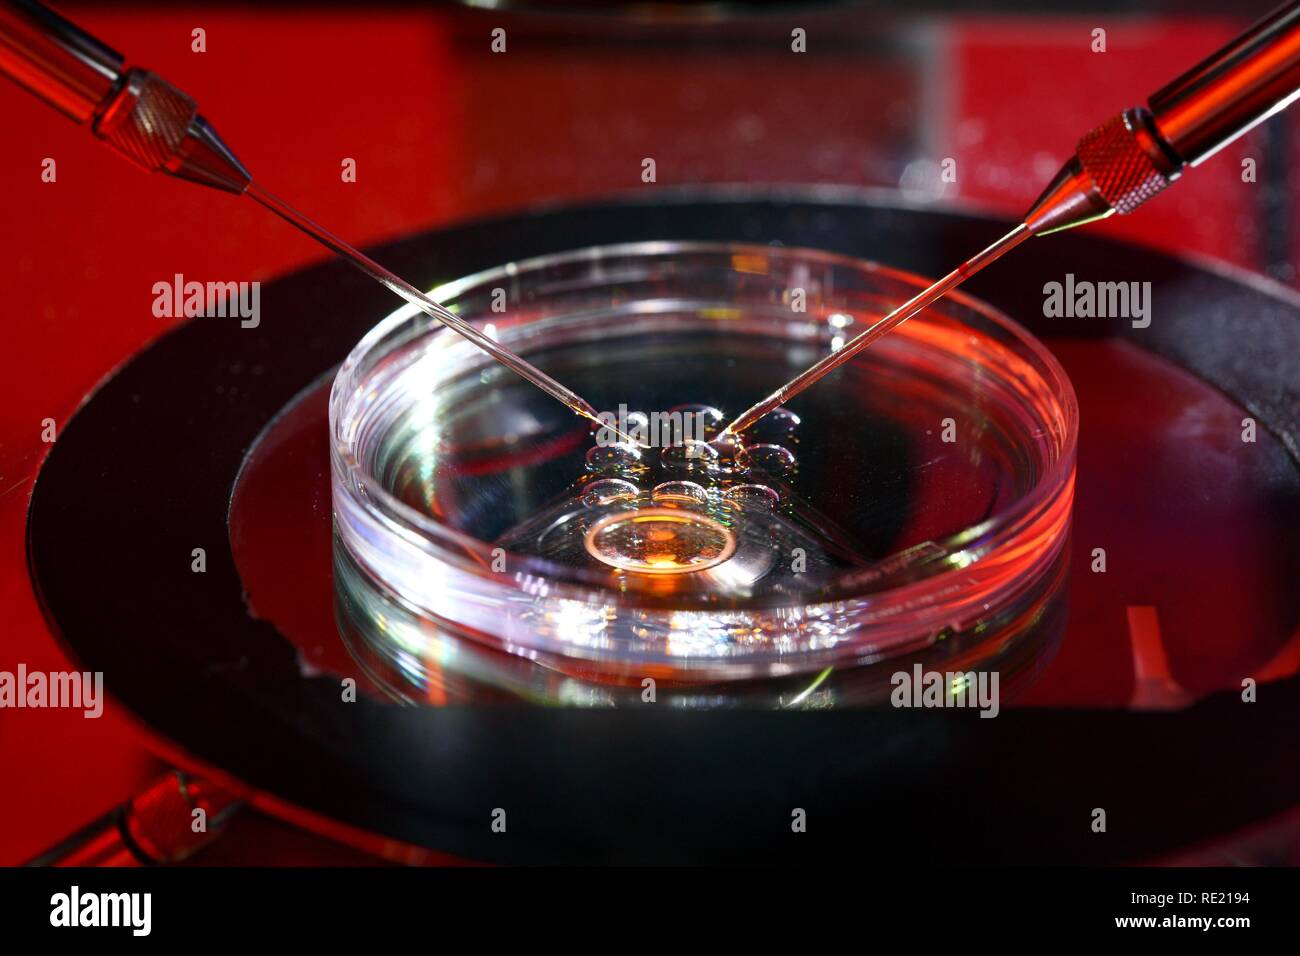 Künstliche Besamung mit der ICSI-Methode, die intrazytoplasmatische Spermieninjektion, unter dem Mikroskop Stockfoto